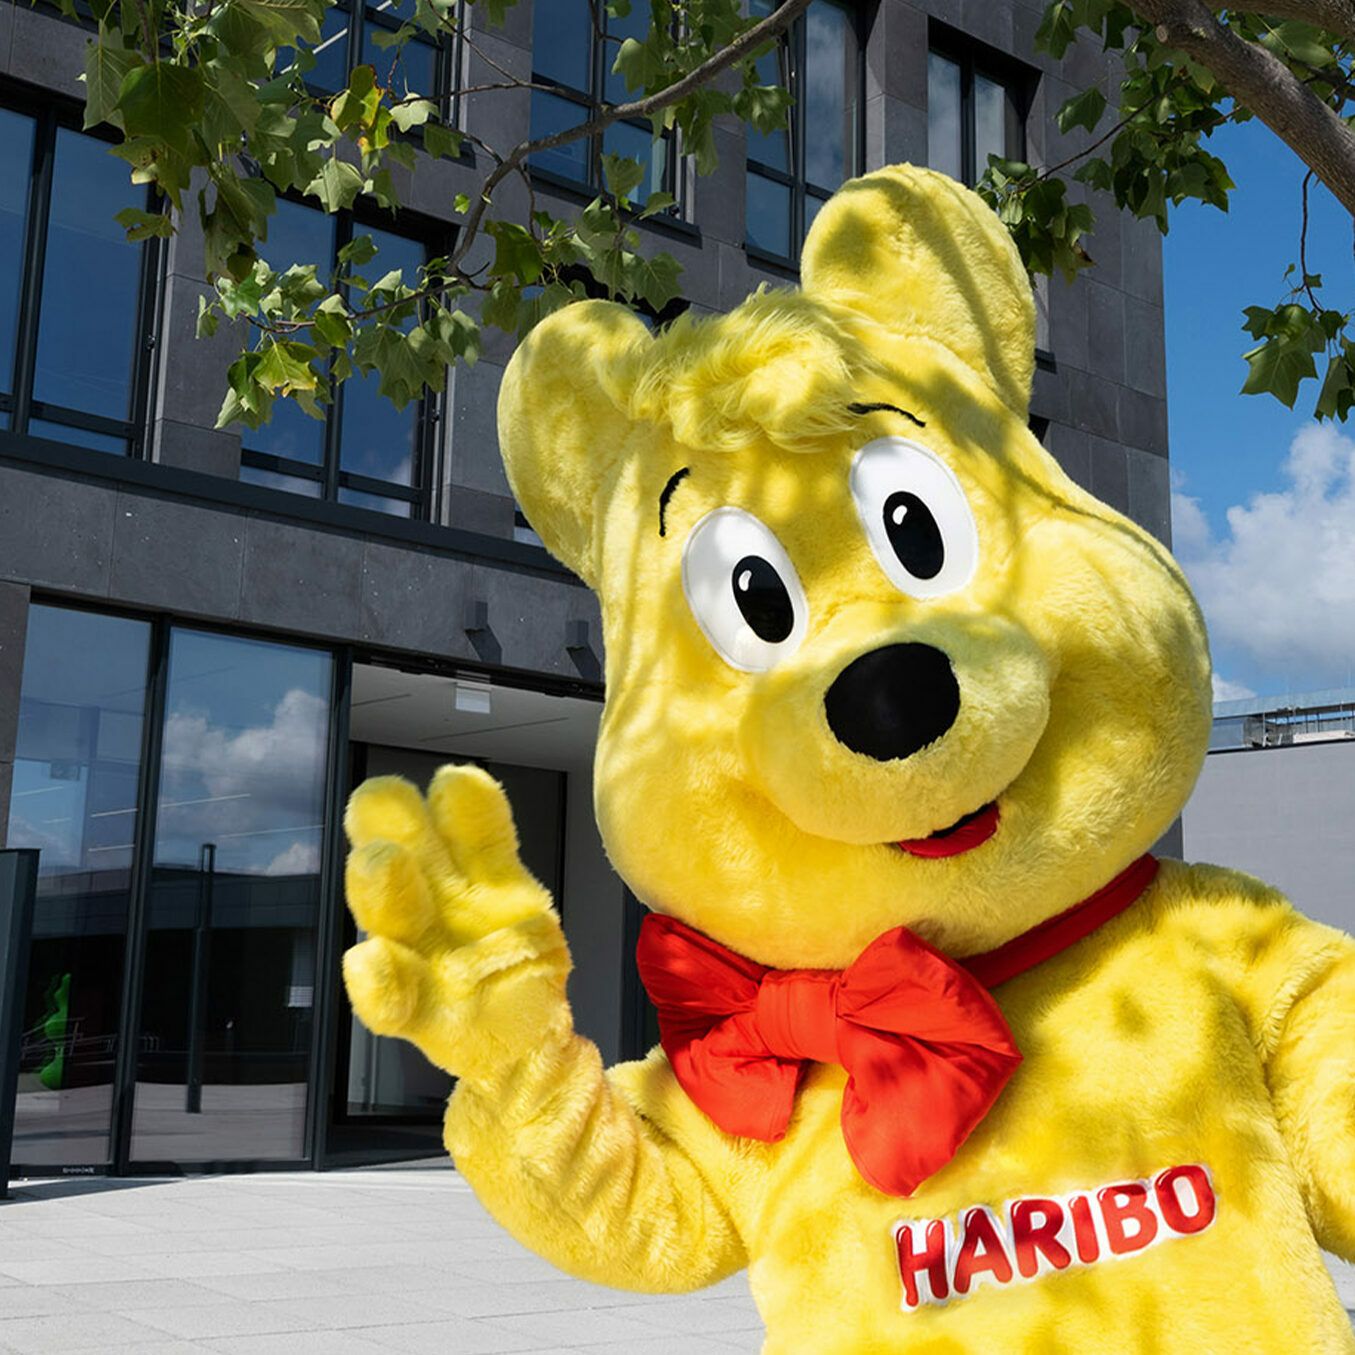 L’Ours d’or, la mascotte de HARIBO, devant le bâtiment de l’entreprise.